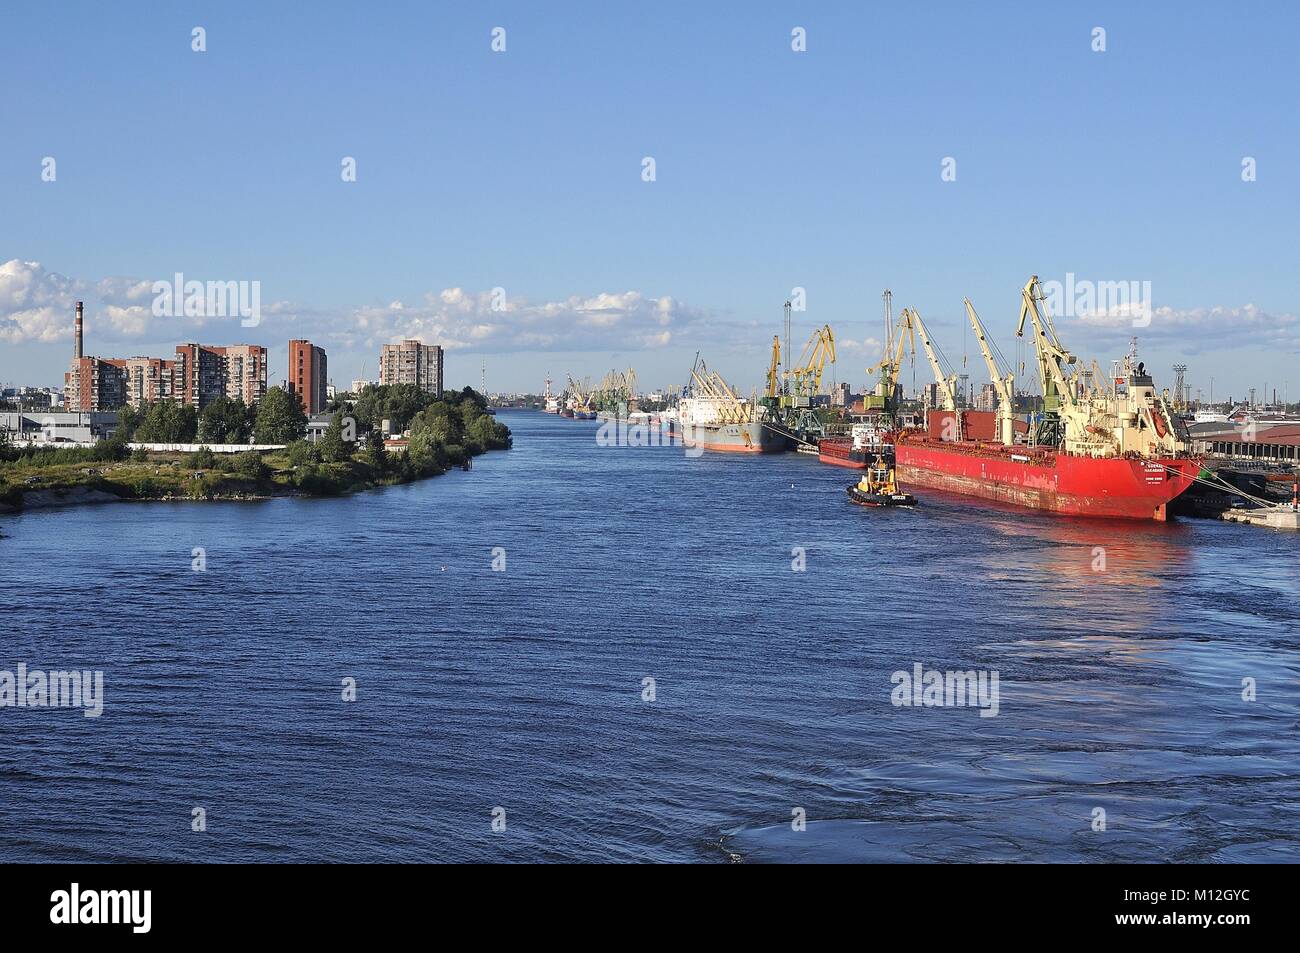 Canal À TRAVERS LE PORT COMMERCIAL, ST.Petersburg, Russie Banque D'Images